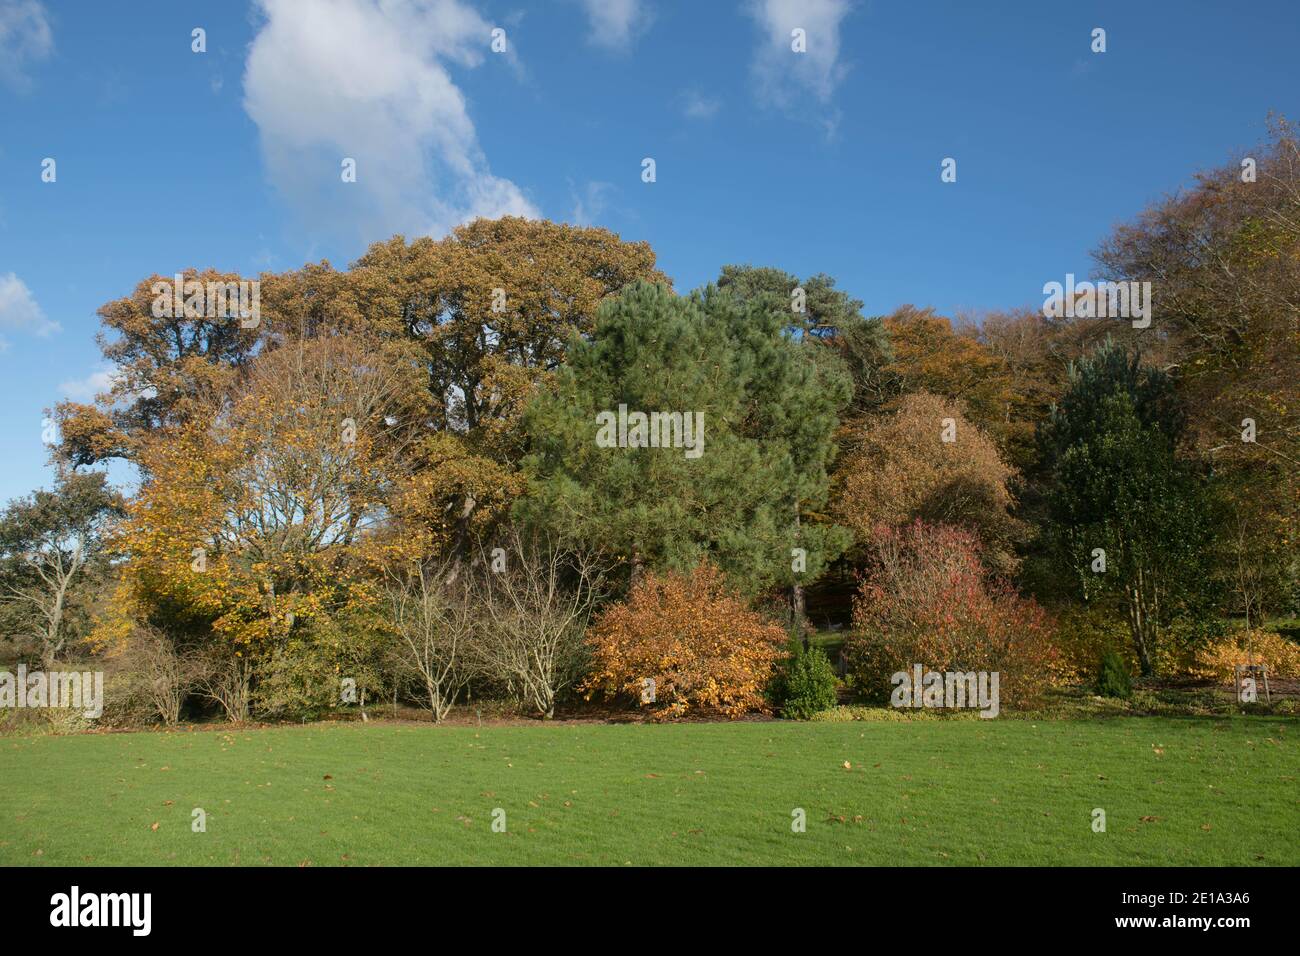 Superbes couleurs d'automne sur les arbres à feuilles caduques et Evergreen dans un paysage forestier à Rosemoor dans le Devon rural, Angleterre, Royaume-Uni Banque D'Images